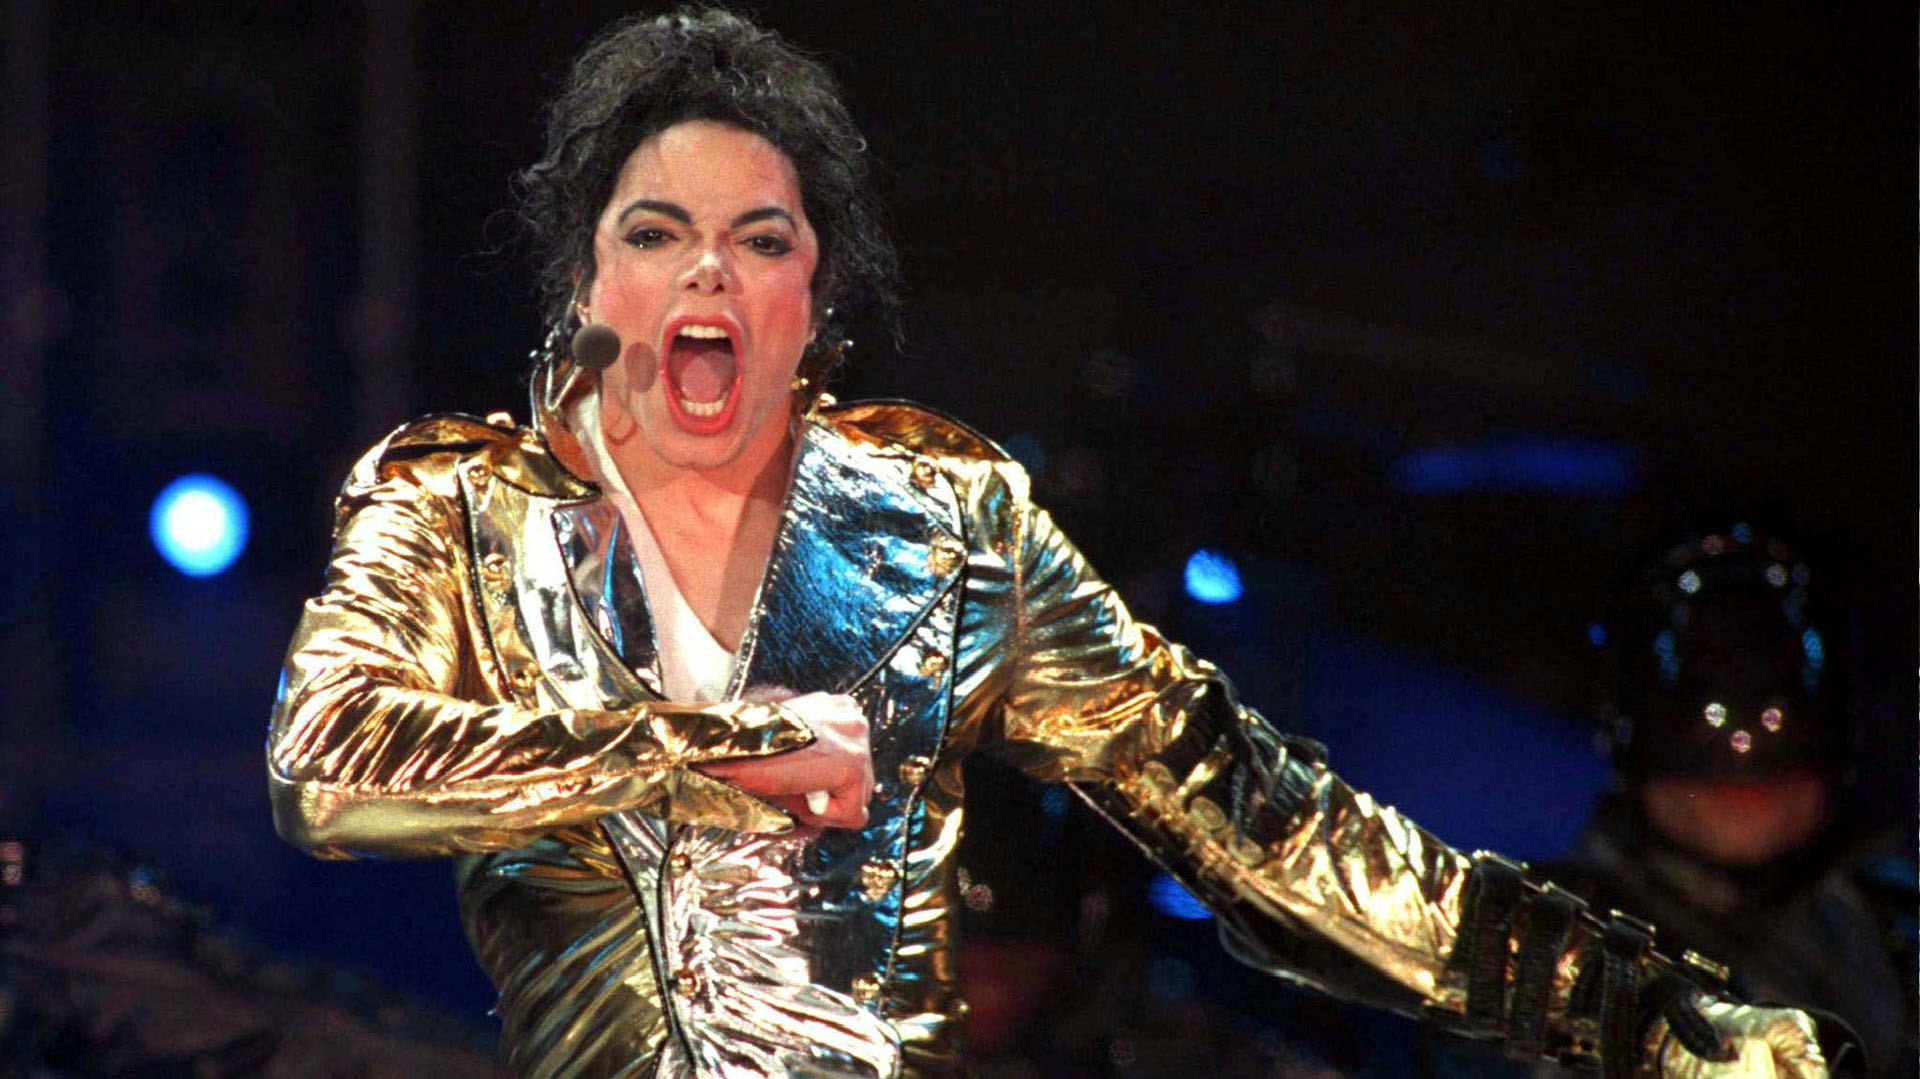 El Rey del Pop, el sicario que en su arma llevaba la silueta de Michael Jackson